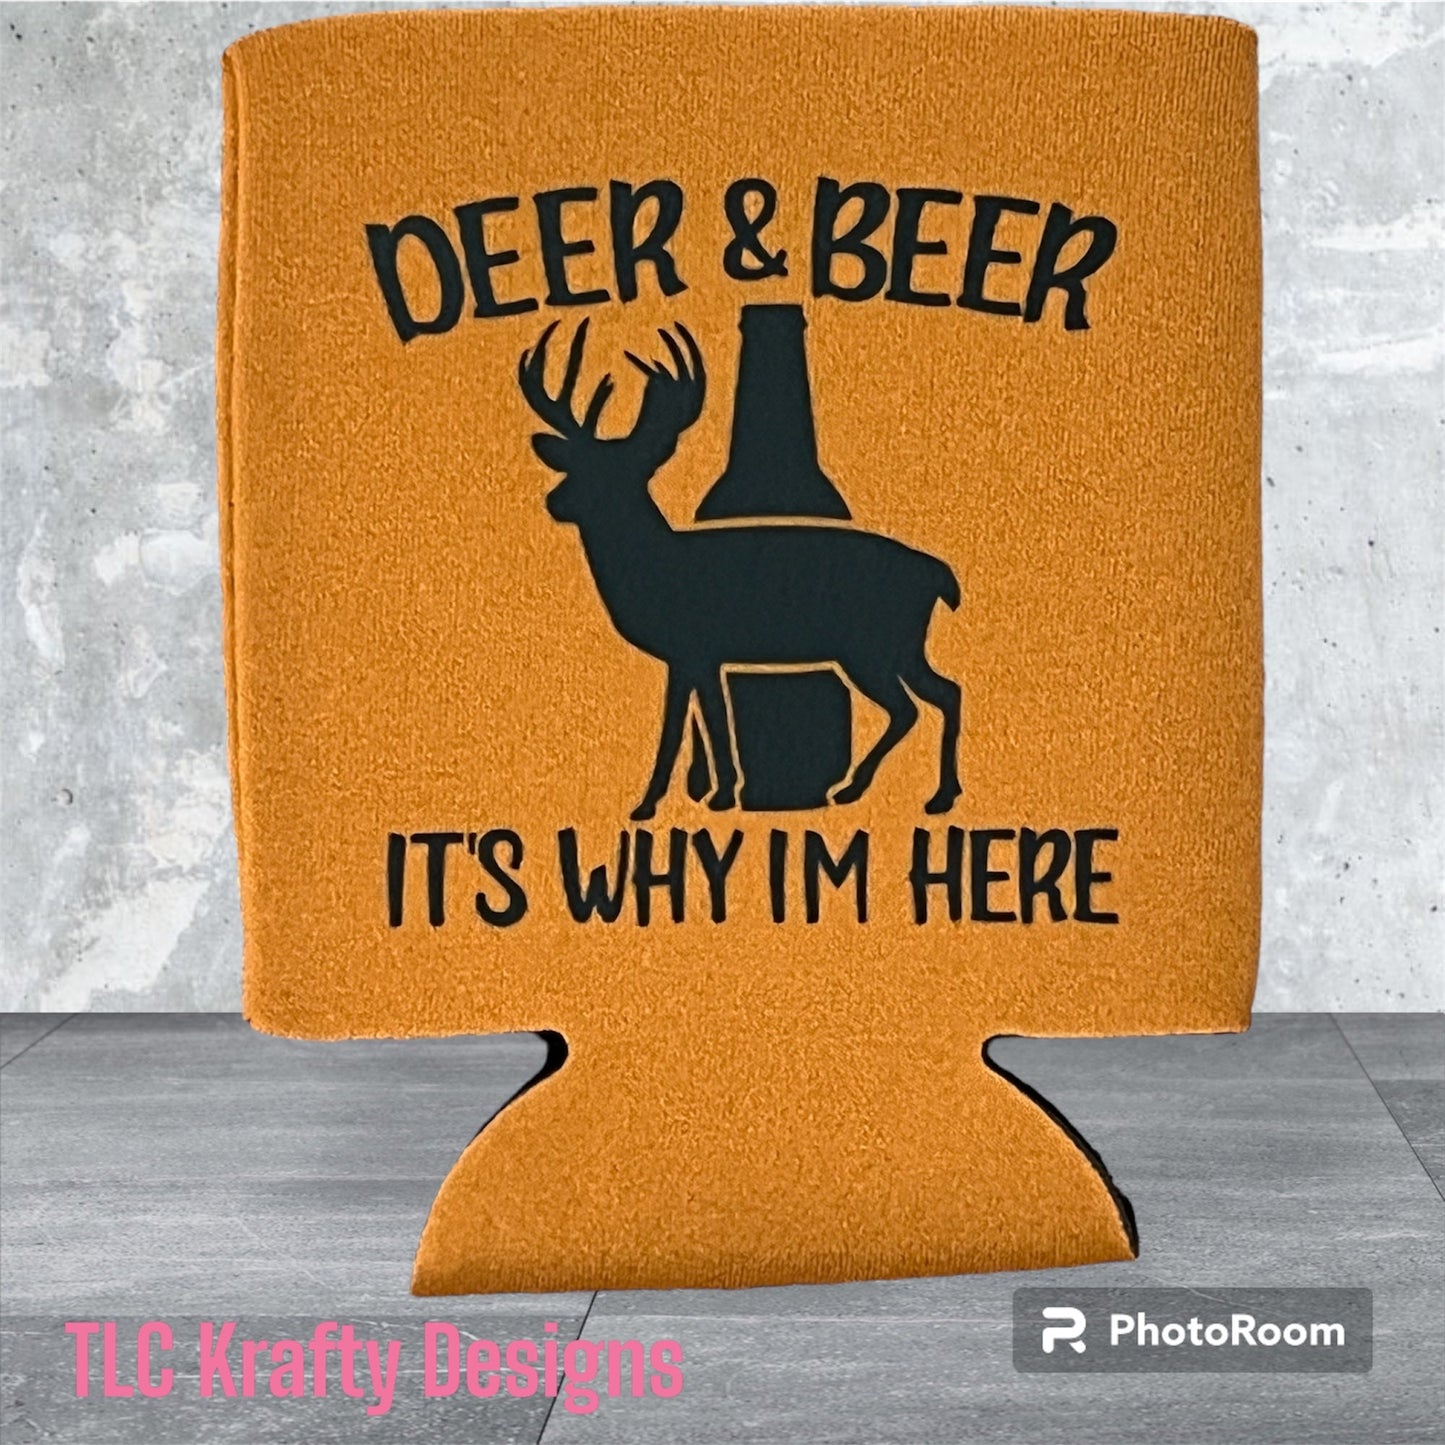 Deer & Beer it’s why I’m here Koozie SLIM Can Cooler